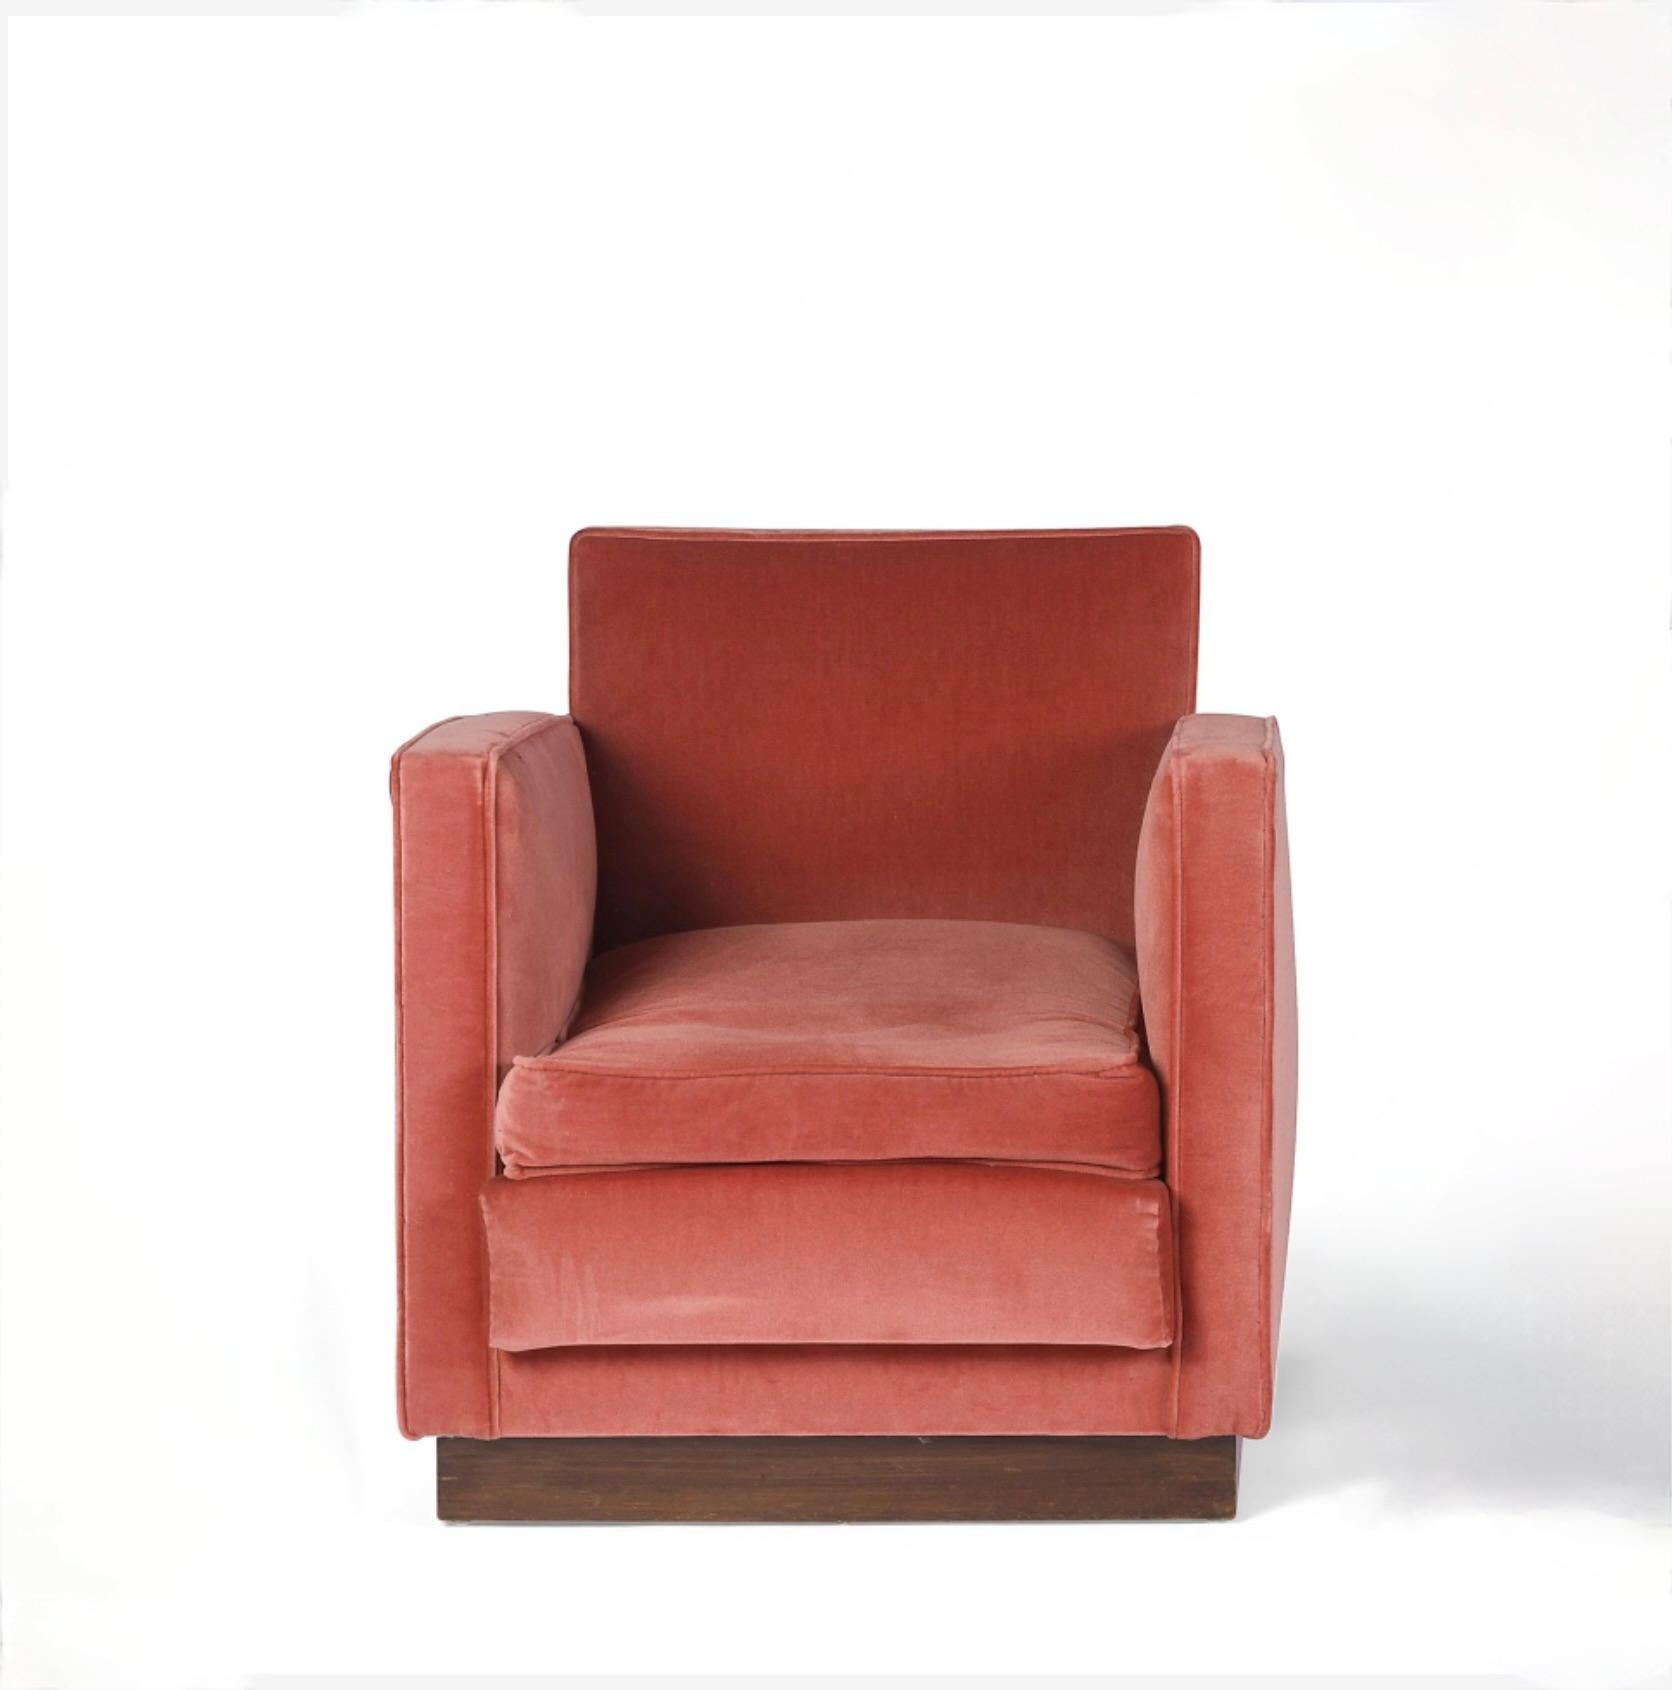 Ein äußerst eleganter französischer Art-Déco-Sessel, der 1934 von Decoration Lévitan hergestellt wurde und in deren Katalog aus diesem Jahr dokumentiert ist. Der Sessel ist wunderschön proportioniert, mit einem mit Samt gepolsterten Oberteil und